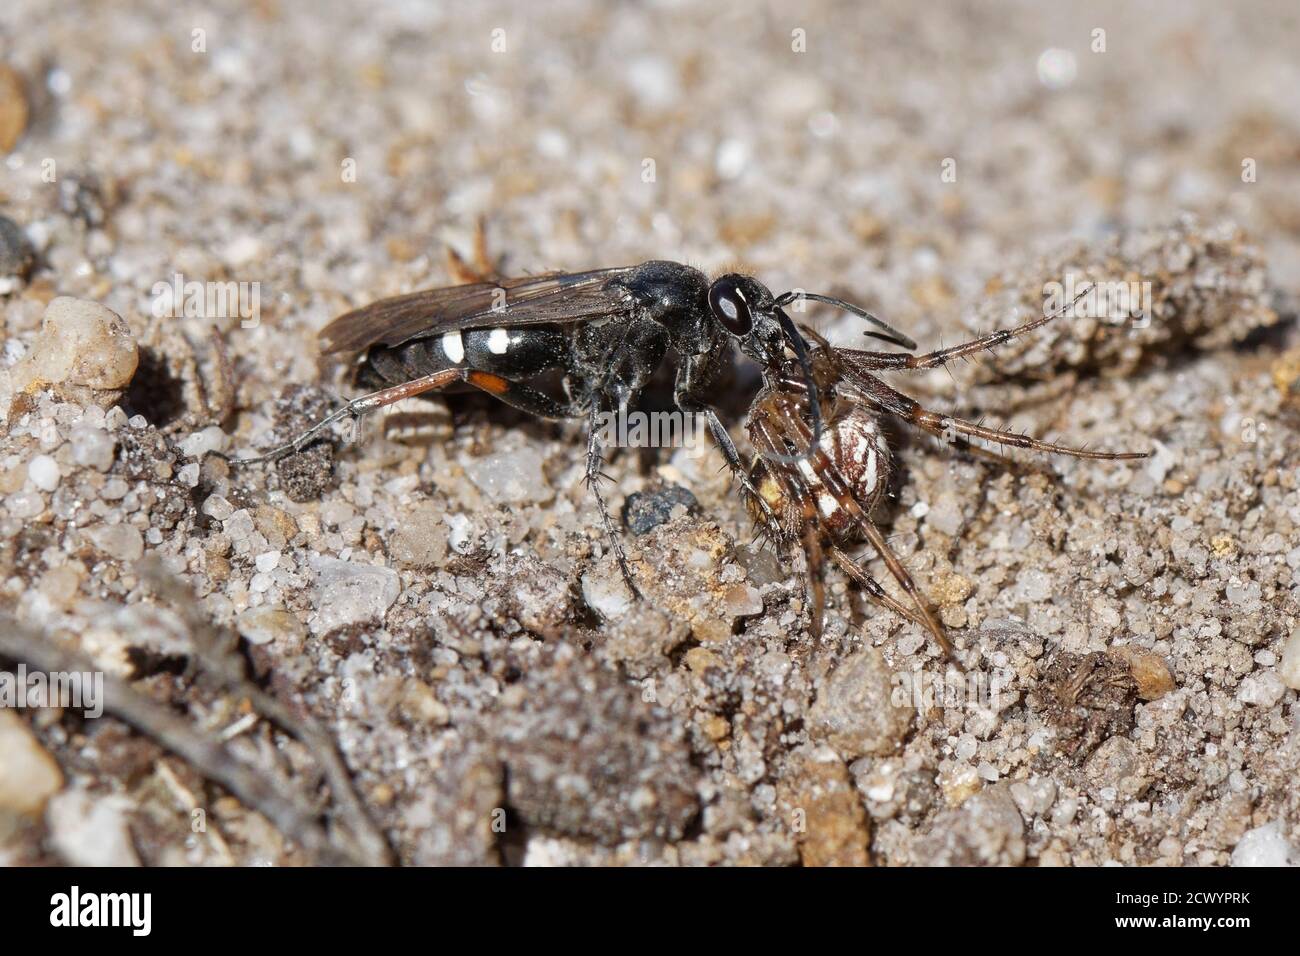 Vespa ragno a zampe rosse (Episyron rufipes) che trascina un ragno orb-tessitore bordato (Neoscona adianta) al suo nido nel brughetto sabbioso, Dorset, Regno Unito. Foto Stock